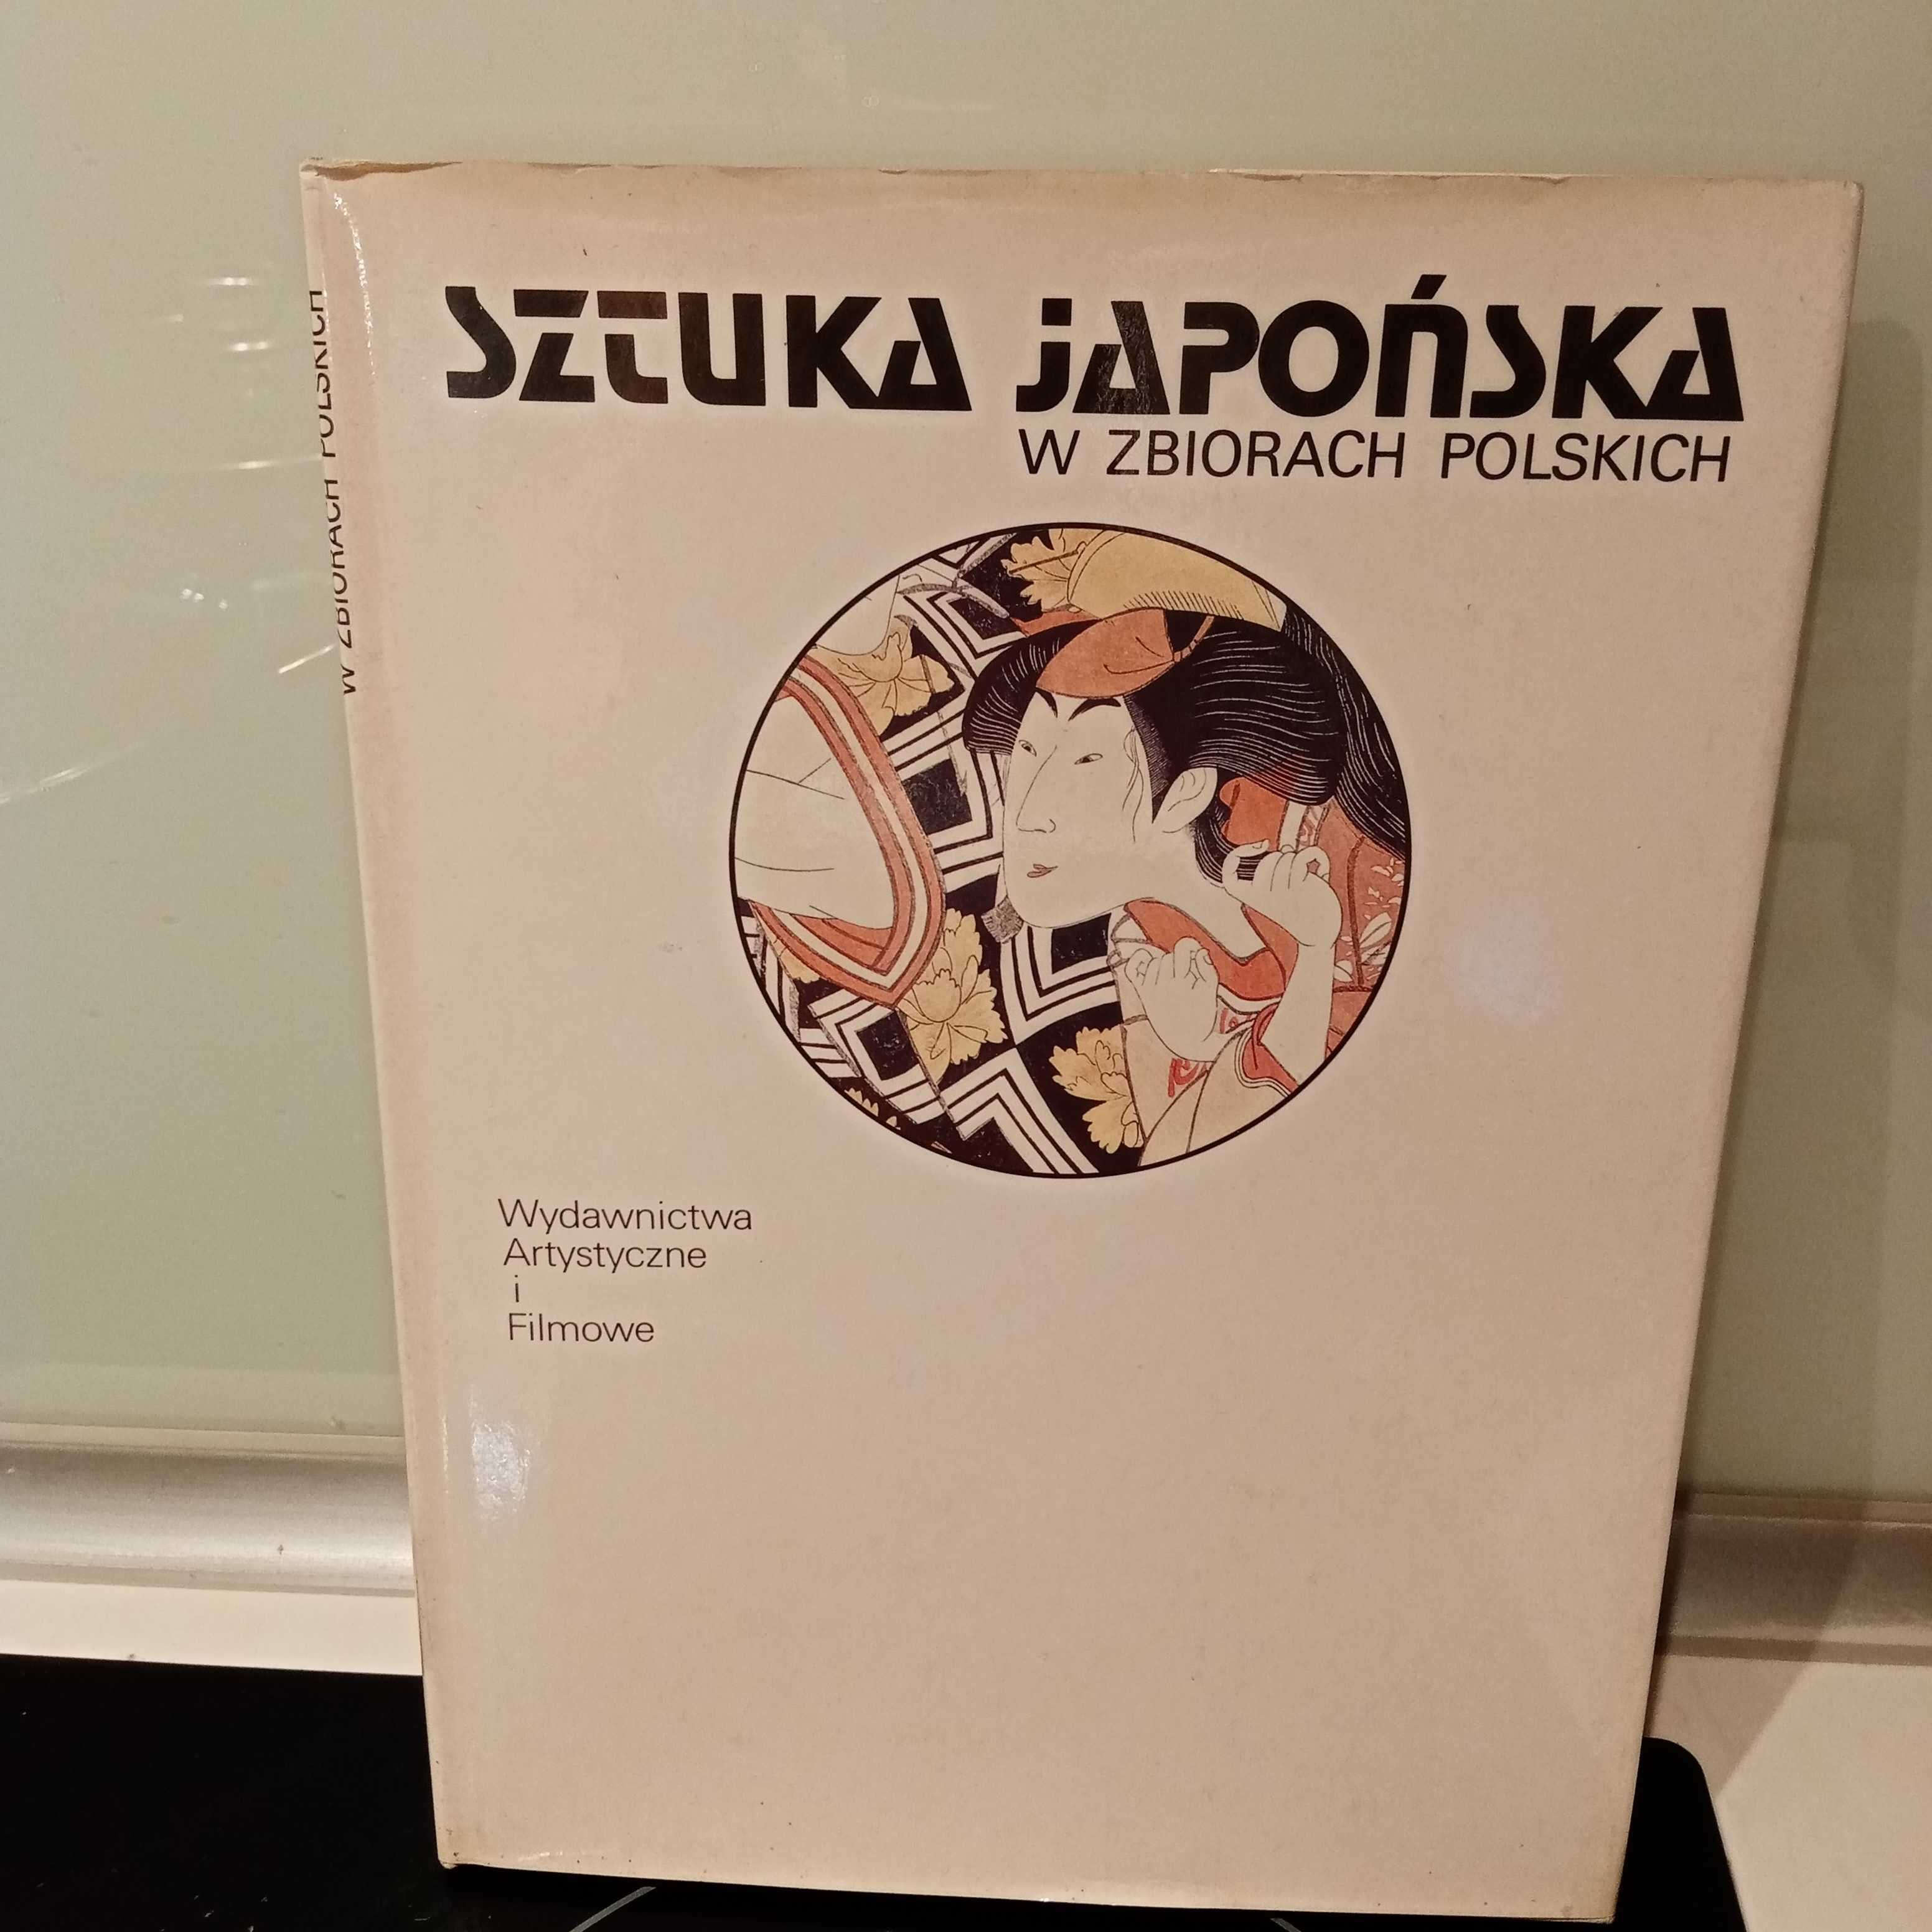 Sztuka japońska w zbiorach polskich Zofia Alberowa